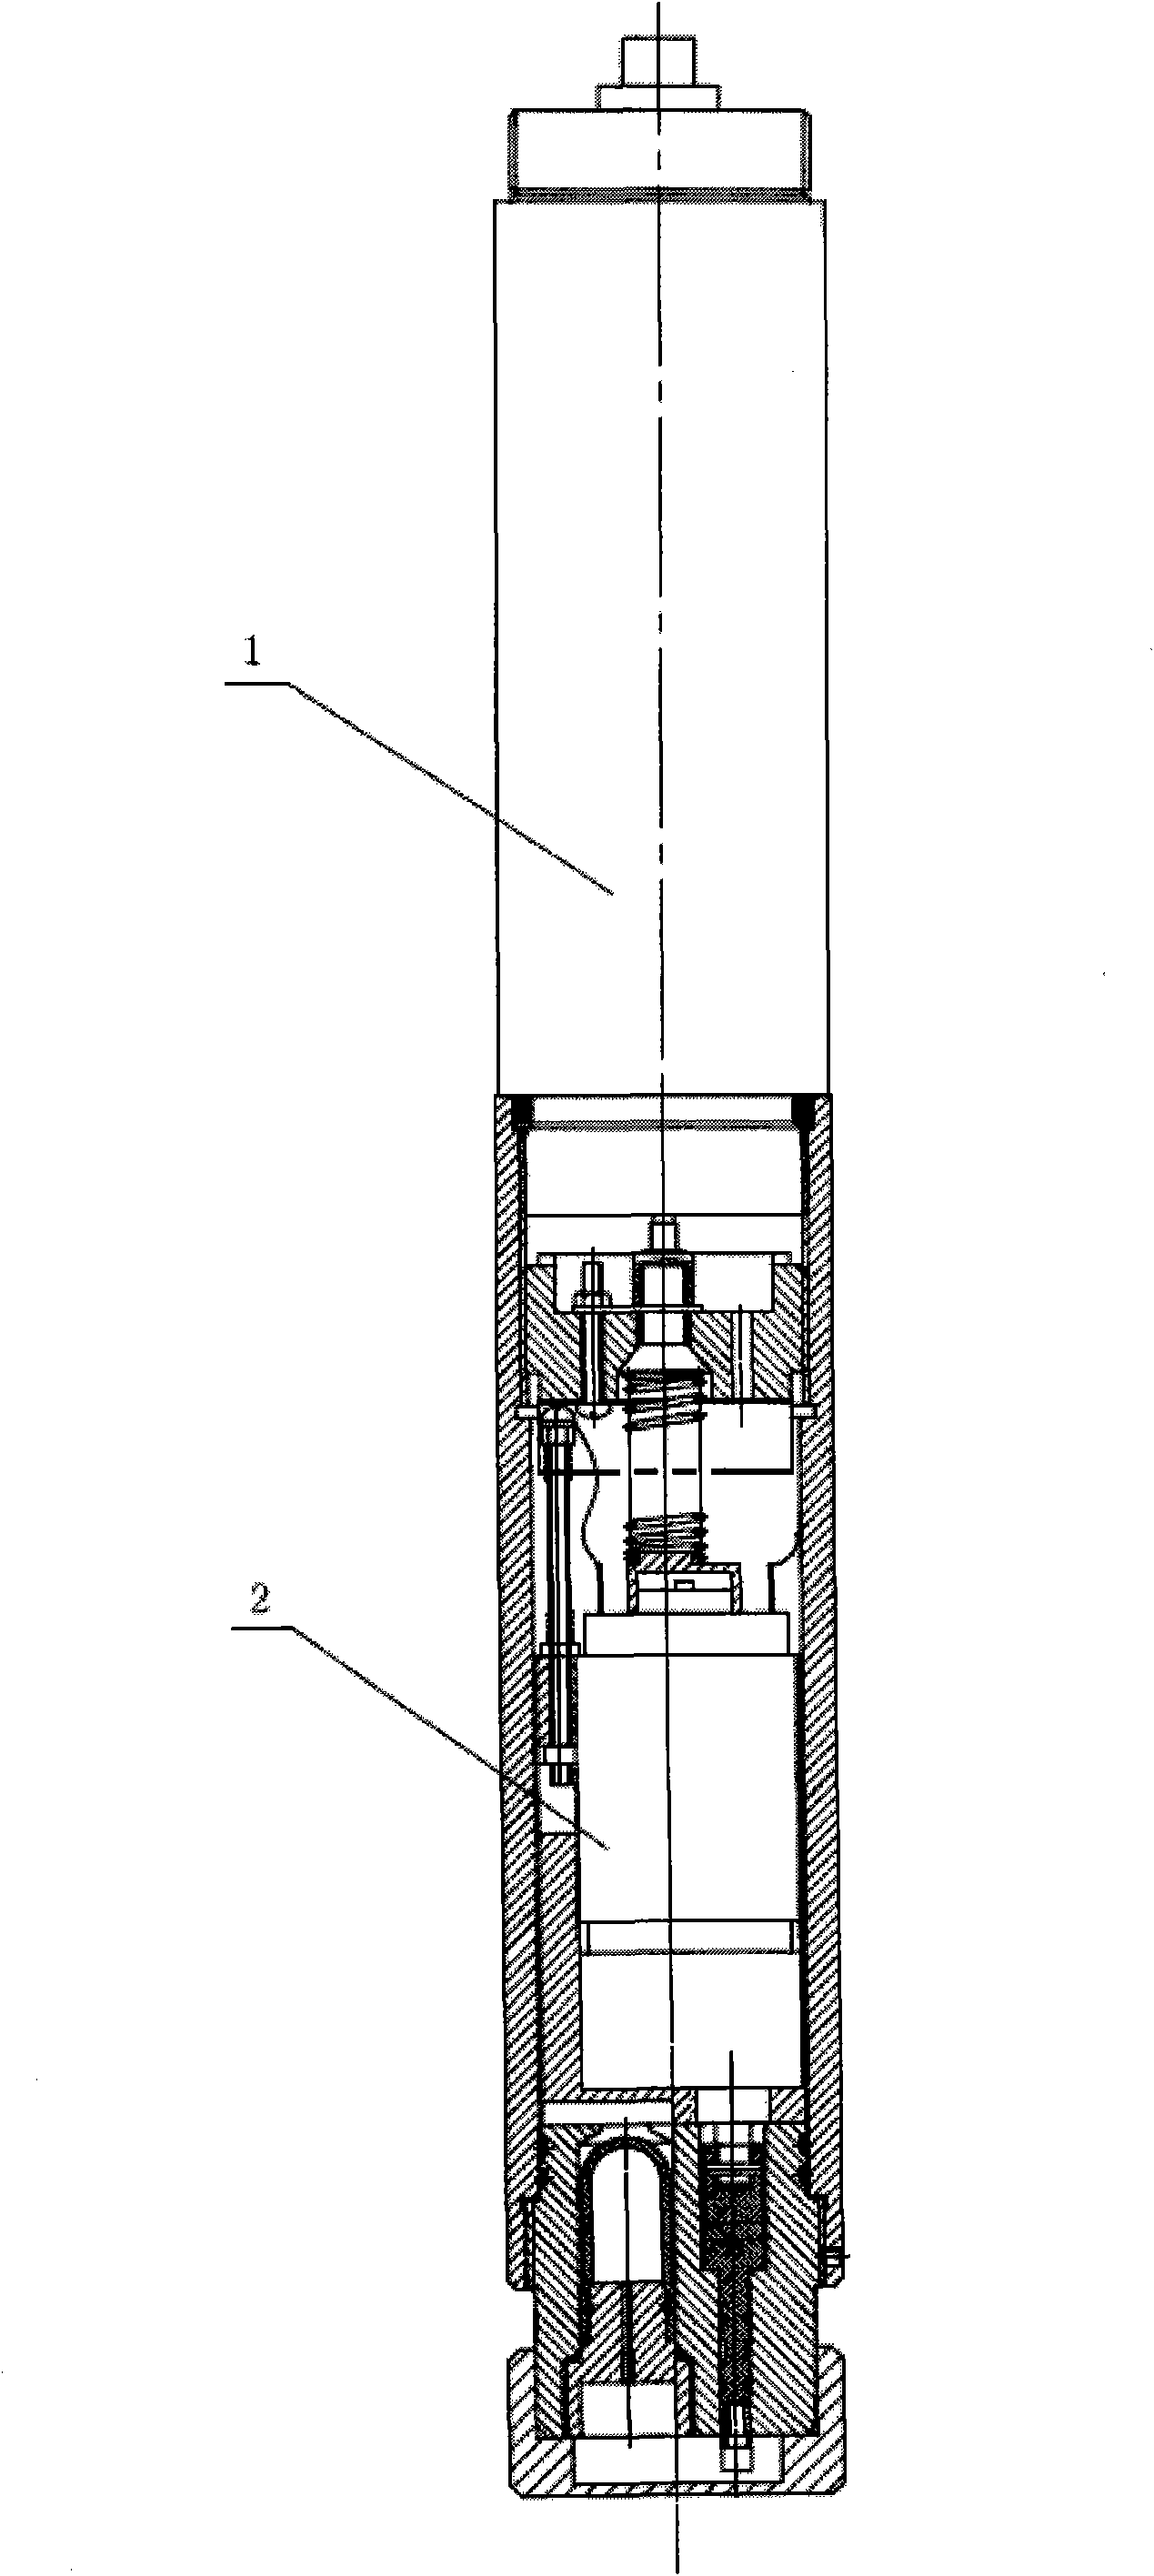 Novel electric directional coring apparatus